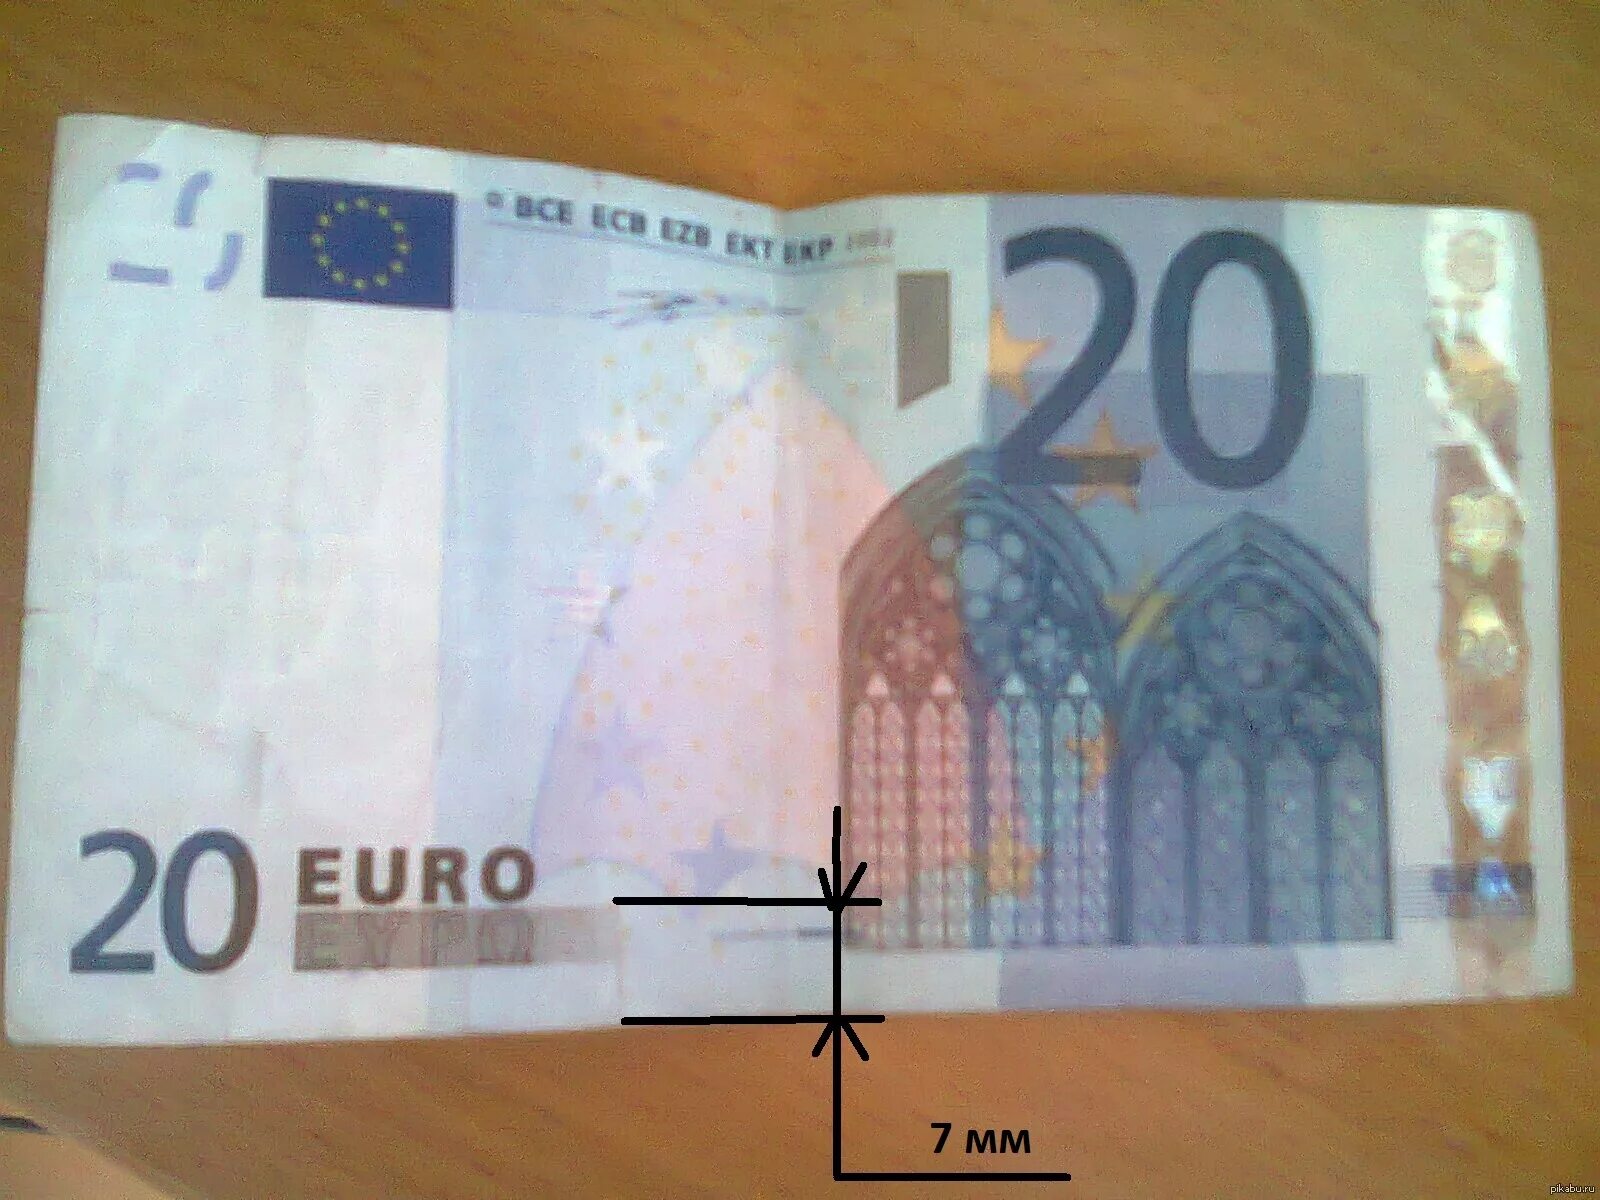 50 Евро купюра. Евро старого образца. 50 Евро старого образца. Евро 20 купюра старого образца.